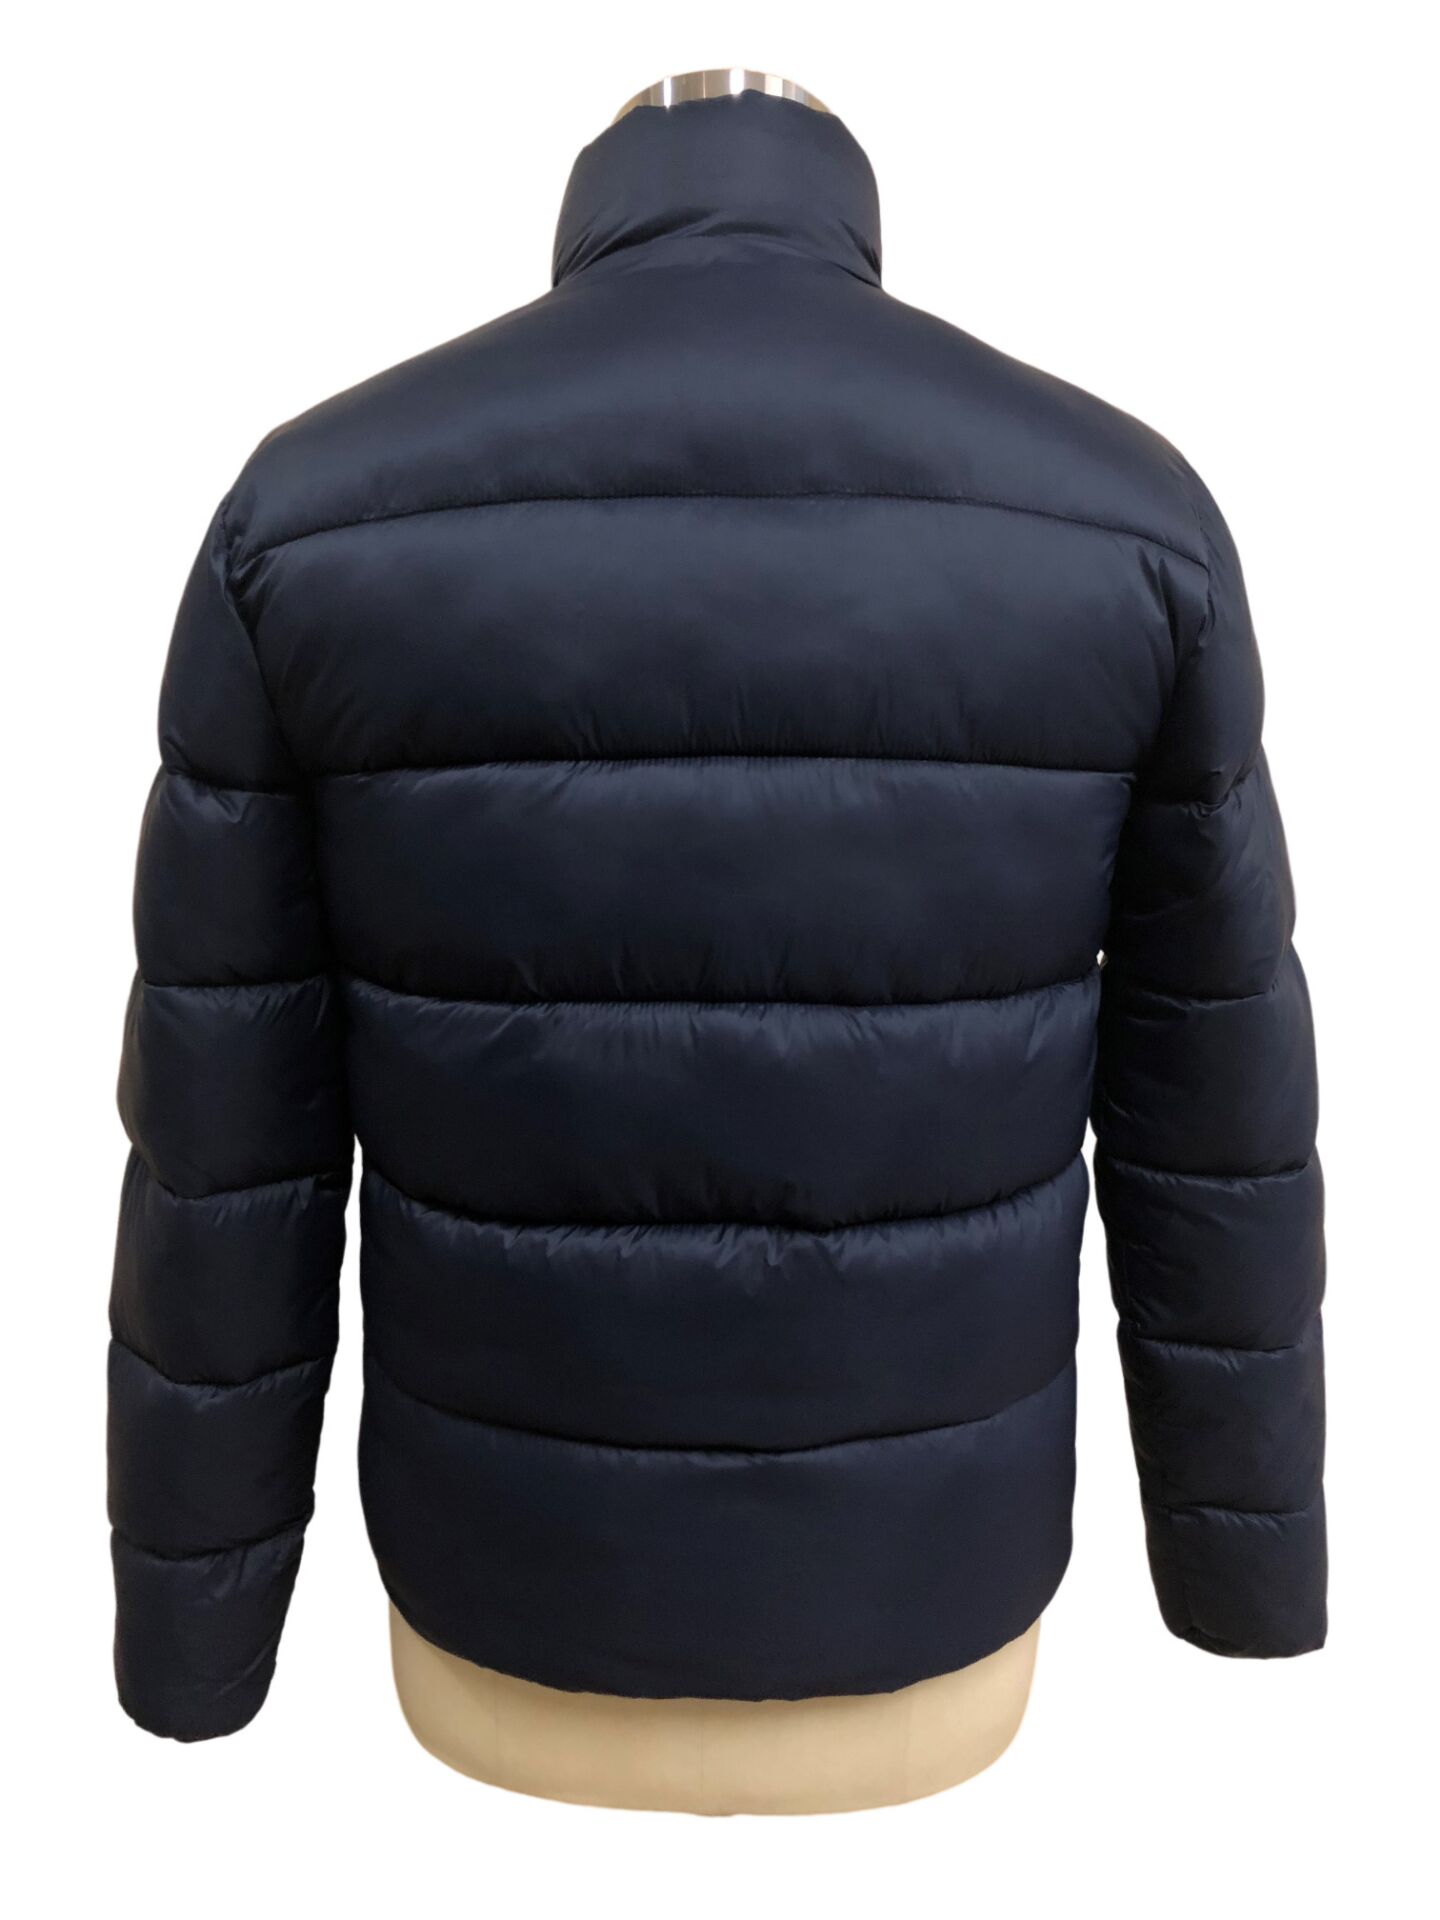  Wholesale Men\'s Winter Warm Puffer Jacket Nylon Fabric Jacket Classic Style Jacket 